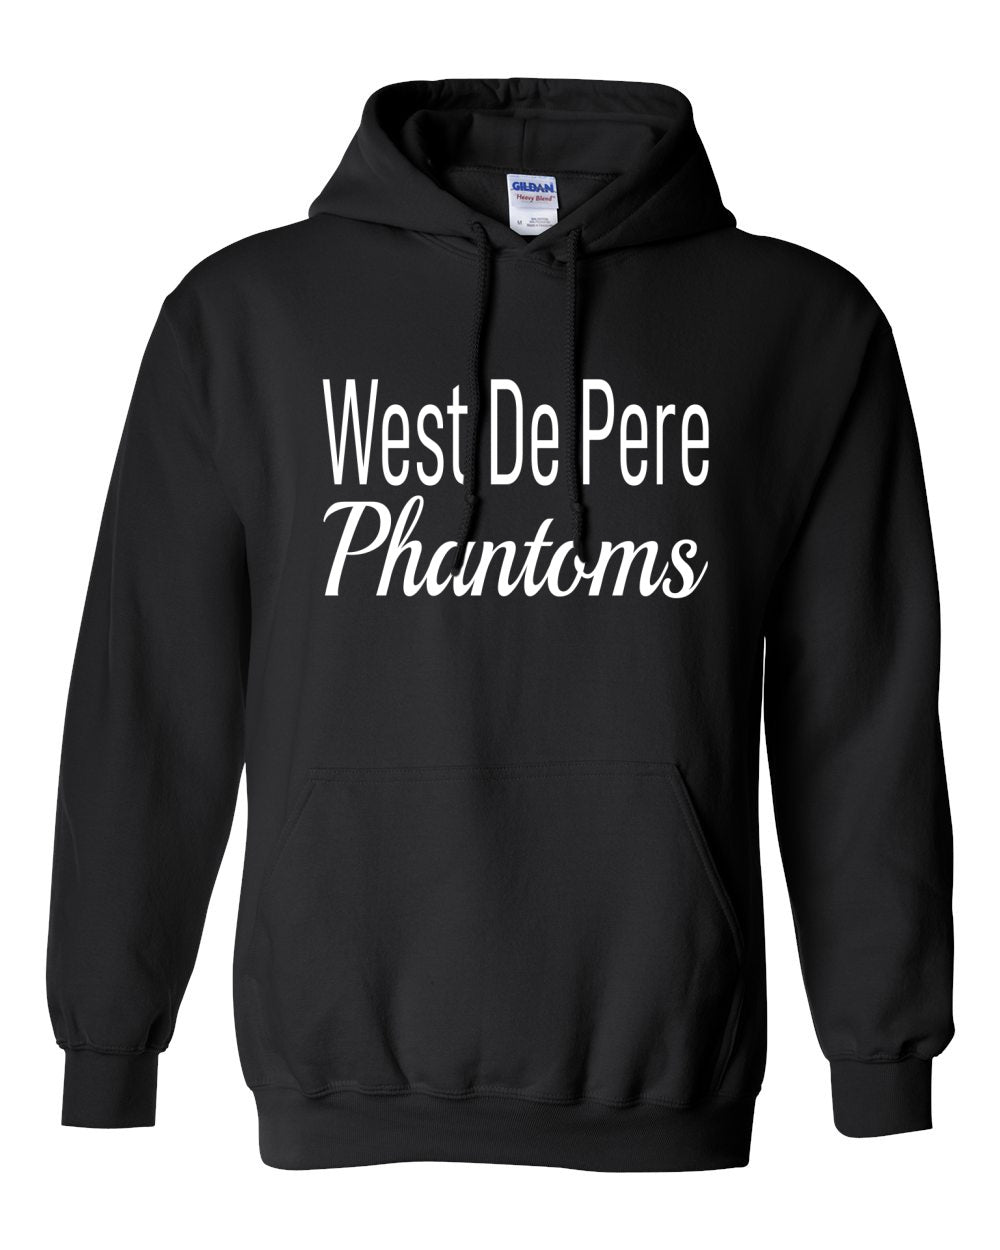 West De Pere Phantoms Merch - Tees, Long Sleeve Tee, Crewneck or Hoodie - Block & Script